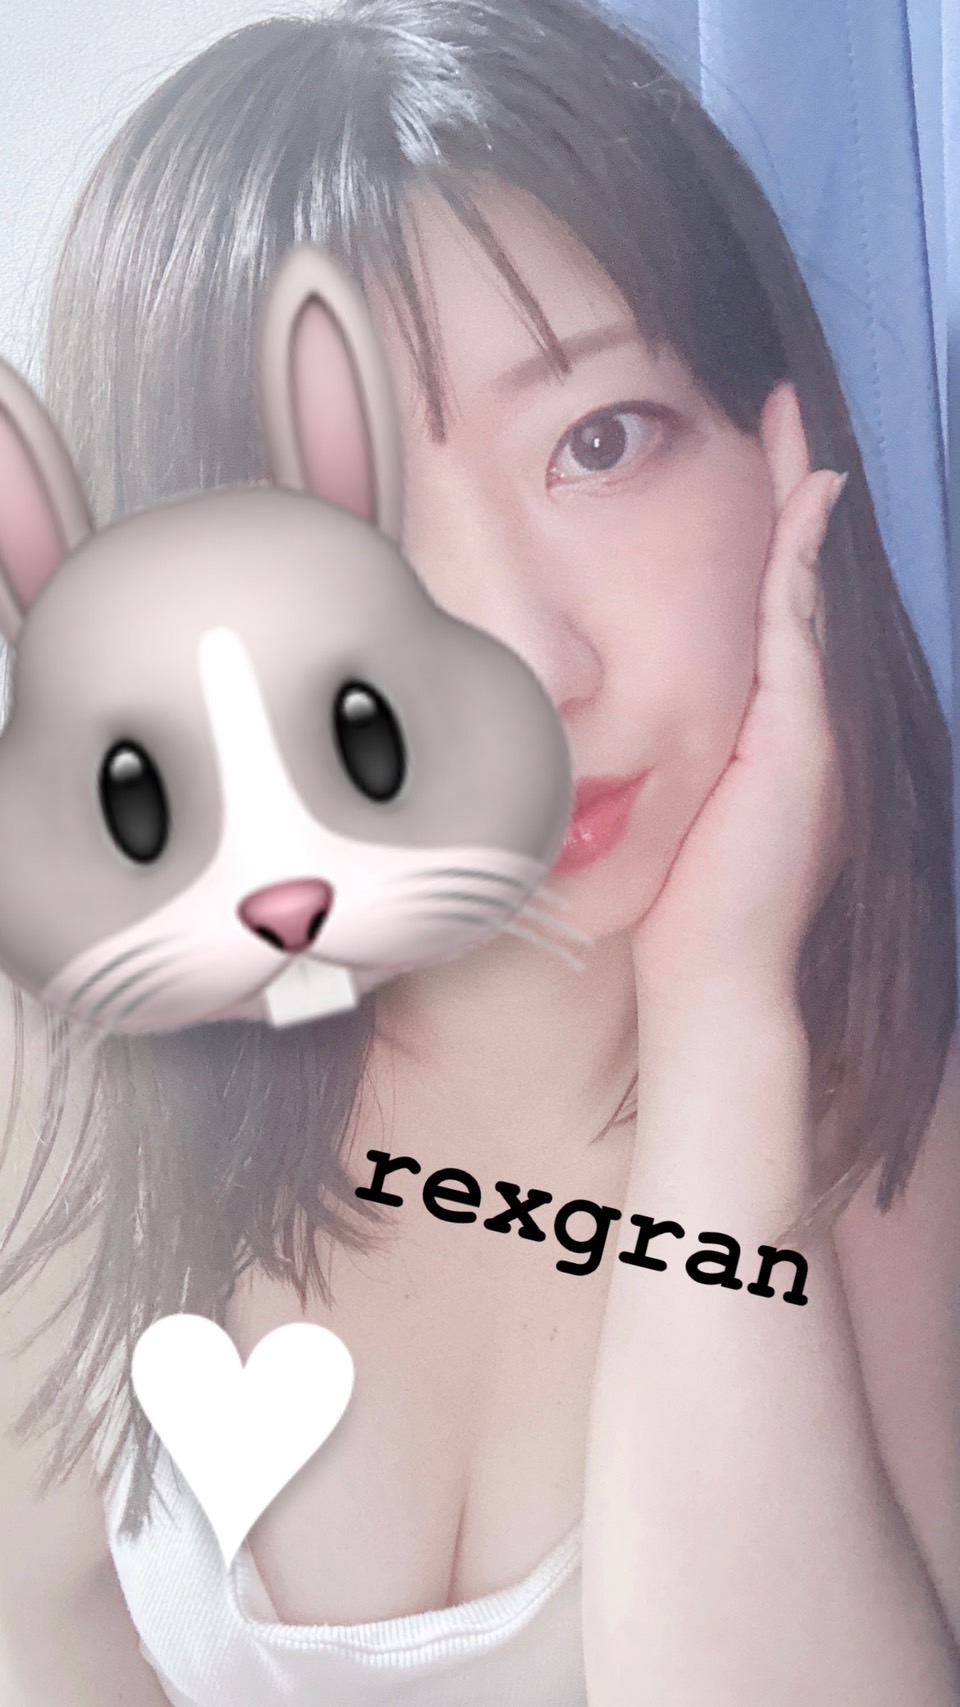 rexgran-レクスグラン-